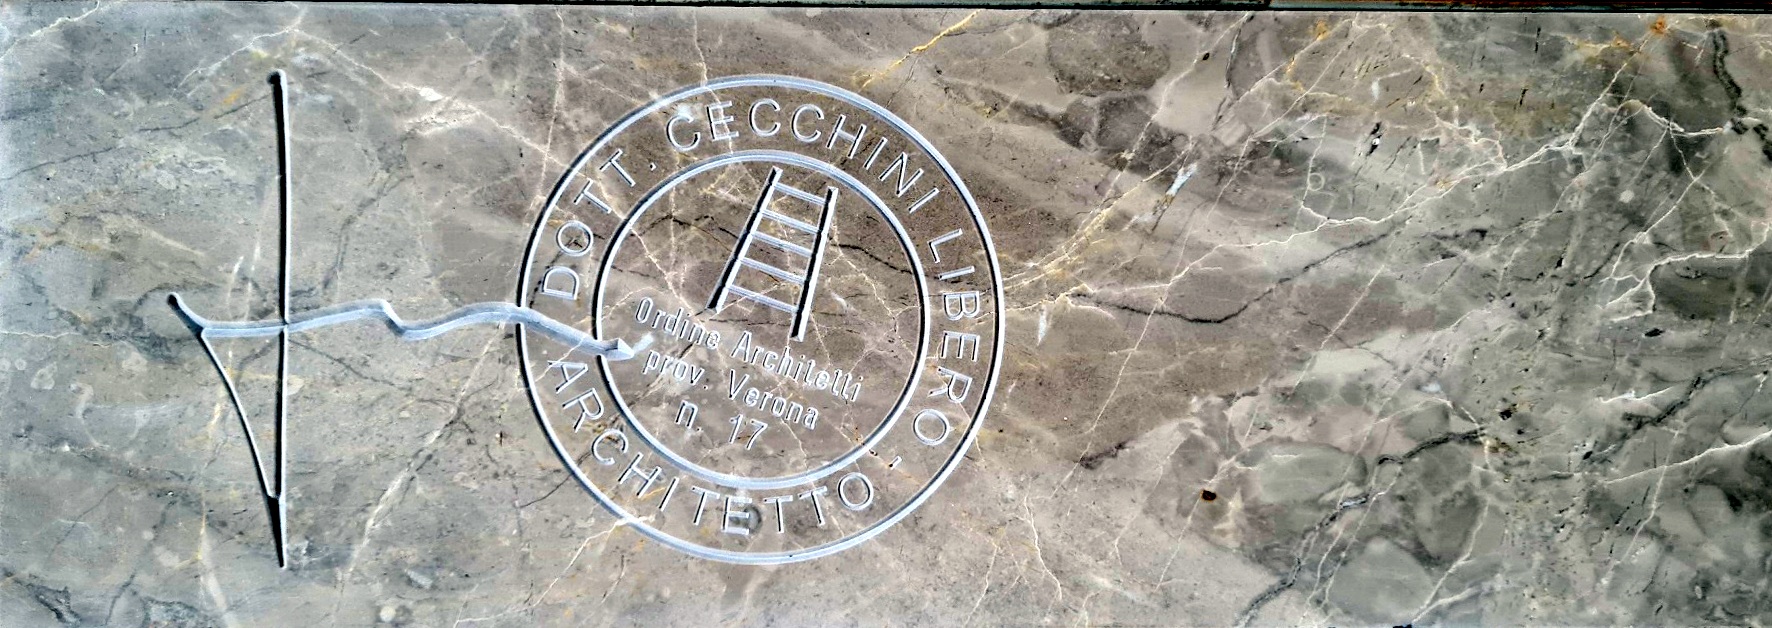 Libero Cecchini “firma” la casa degli architetti: l’omaggio di Verona al maestro della ricostruzione e dello sviluppo urbano